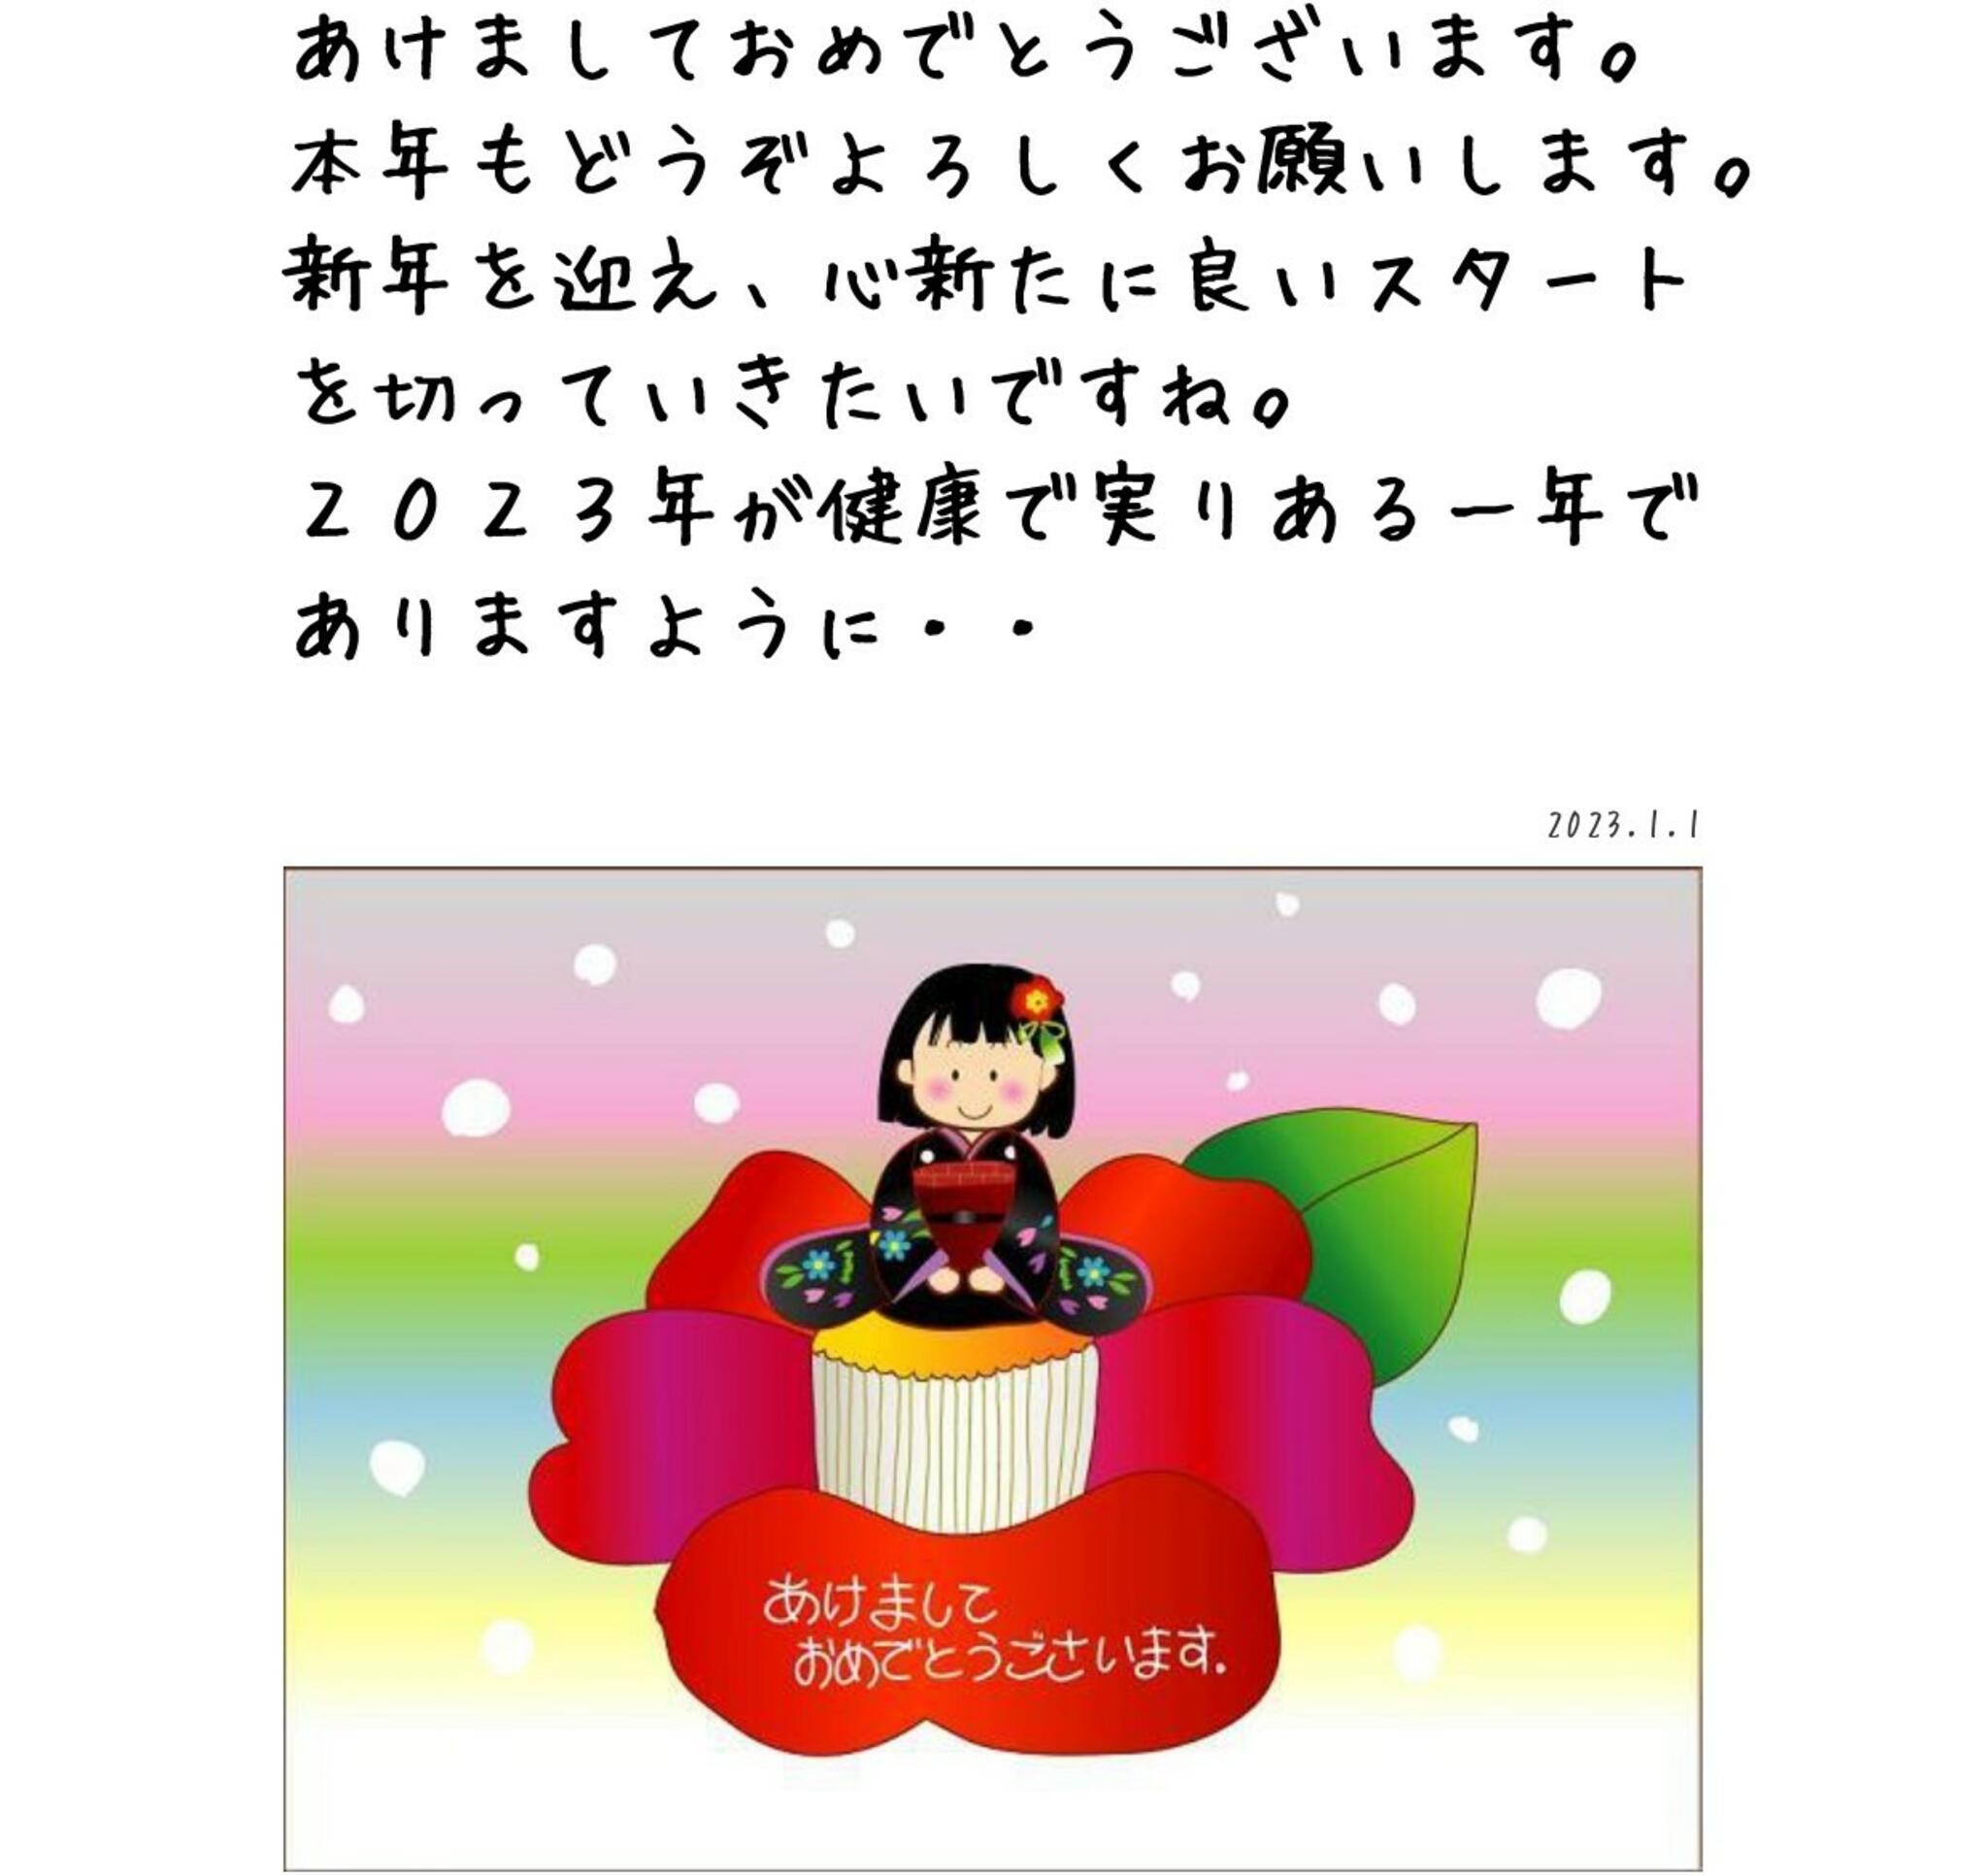 神戸三宮むつう整体院からのお知らせ(新年のご挨拶と年始の営業案内)に関する写真